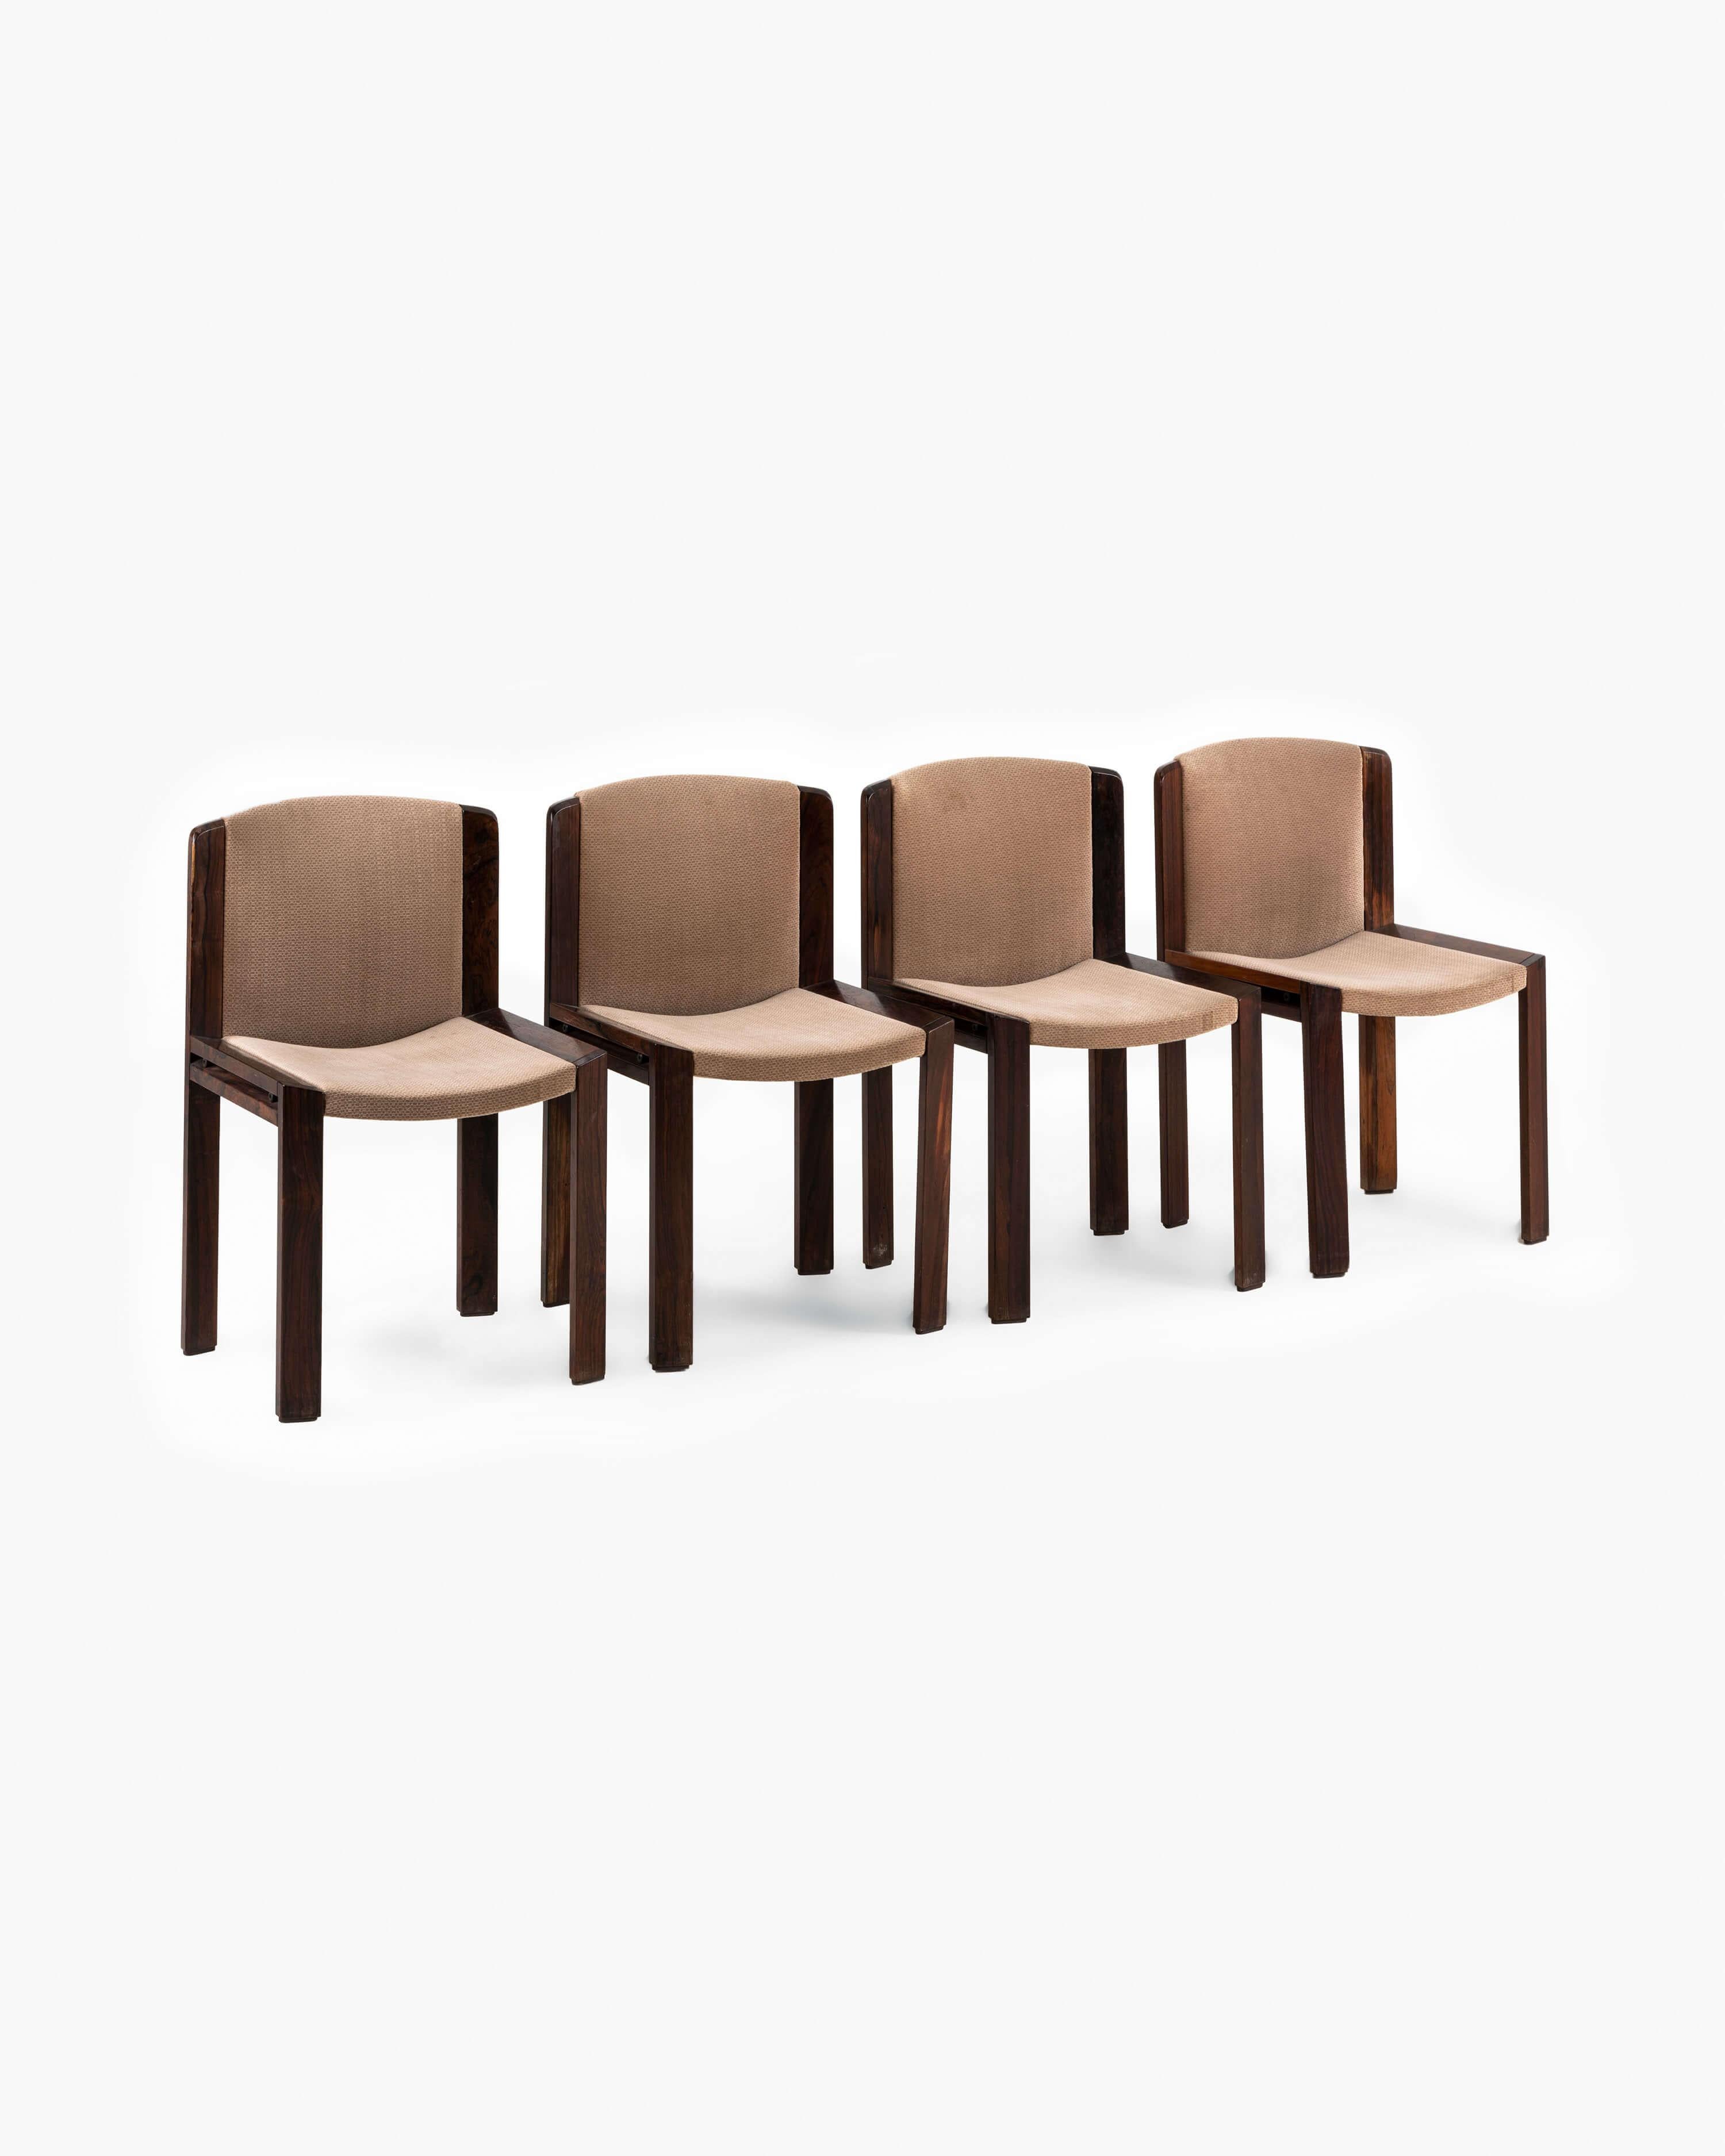 Plongez dans l'allure captivante du design moderne du milieu du siècle avec cet ensemble exceptionnel de quatre chaises Original Model 300, fabriquées de main de maître par Joe Colombo en 1965. Réputées pour leur attrait intemporel, ces chaises